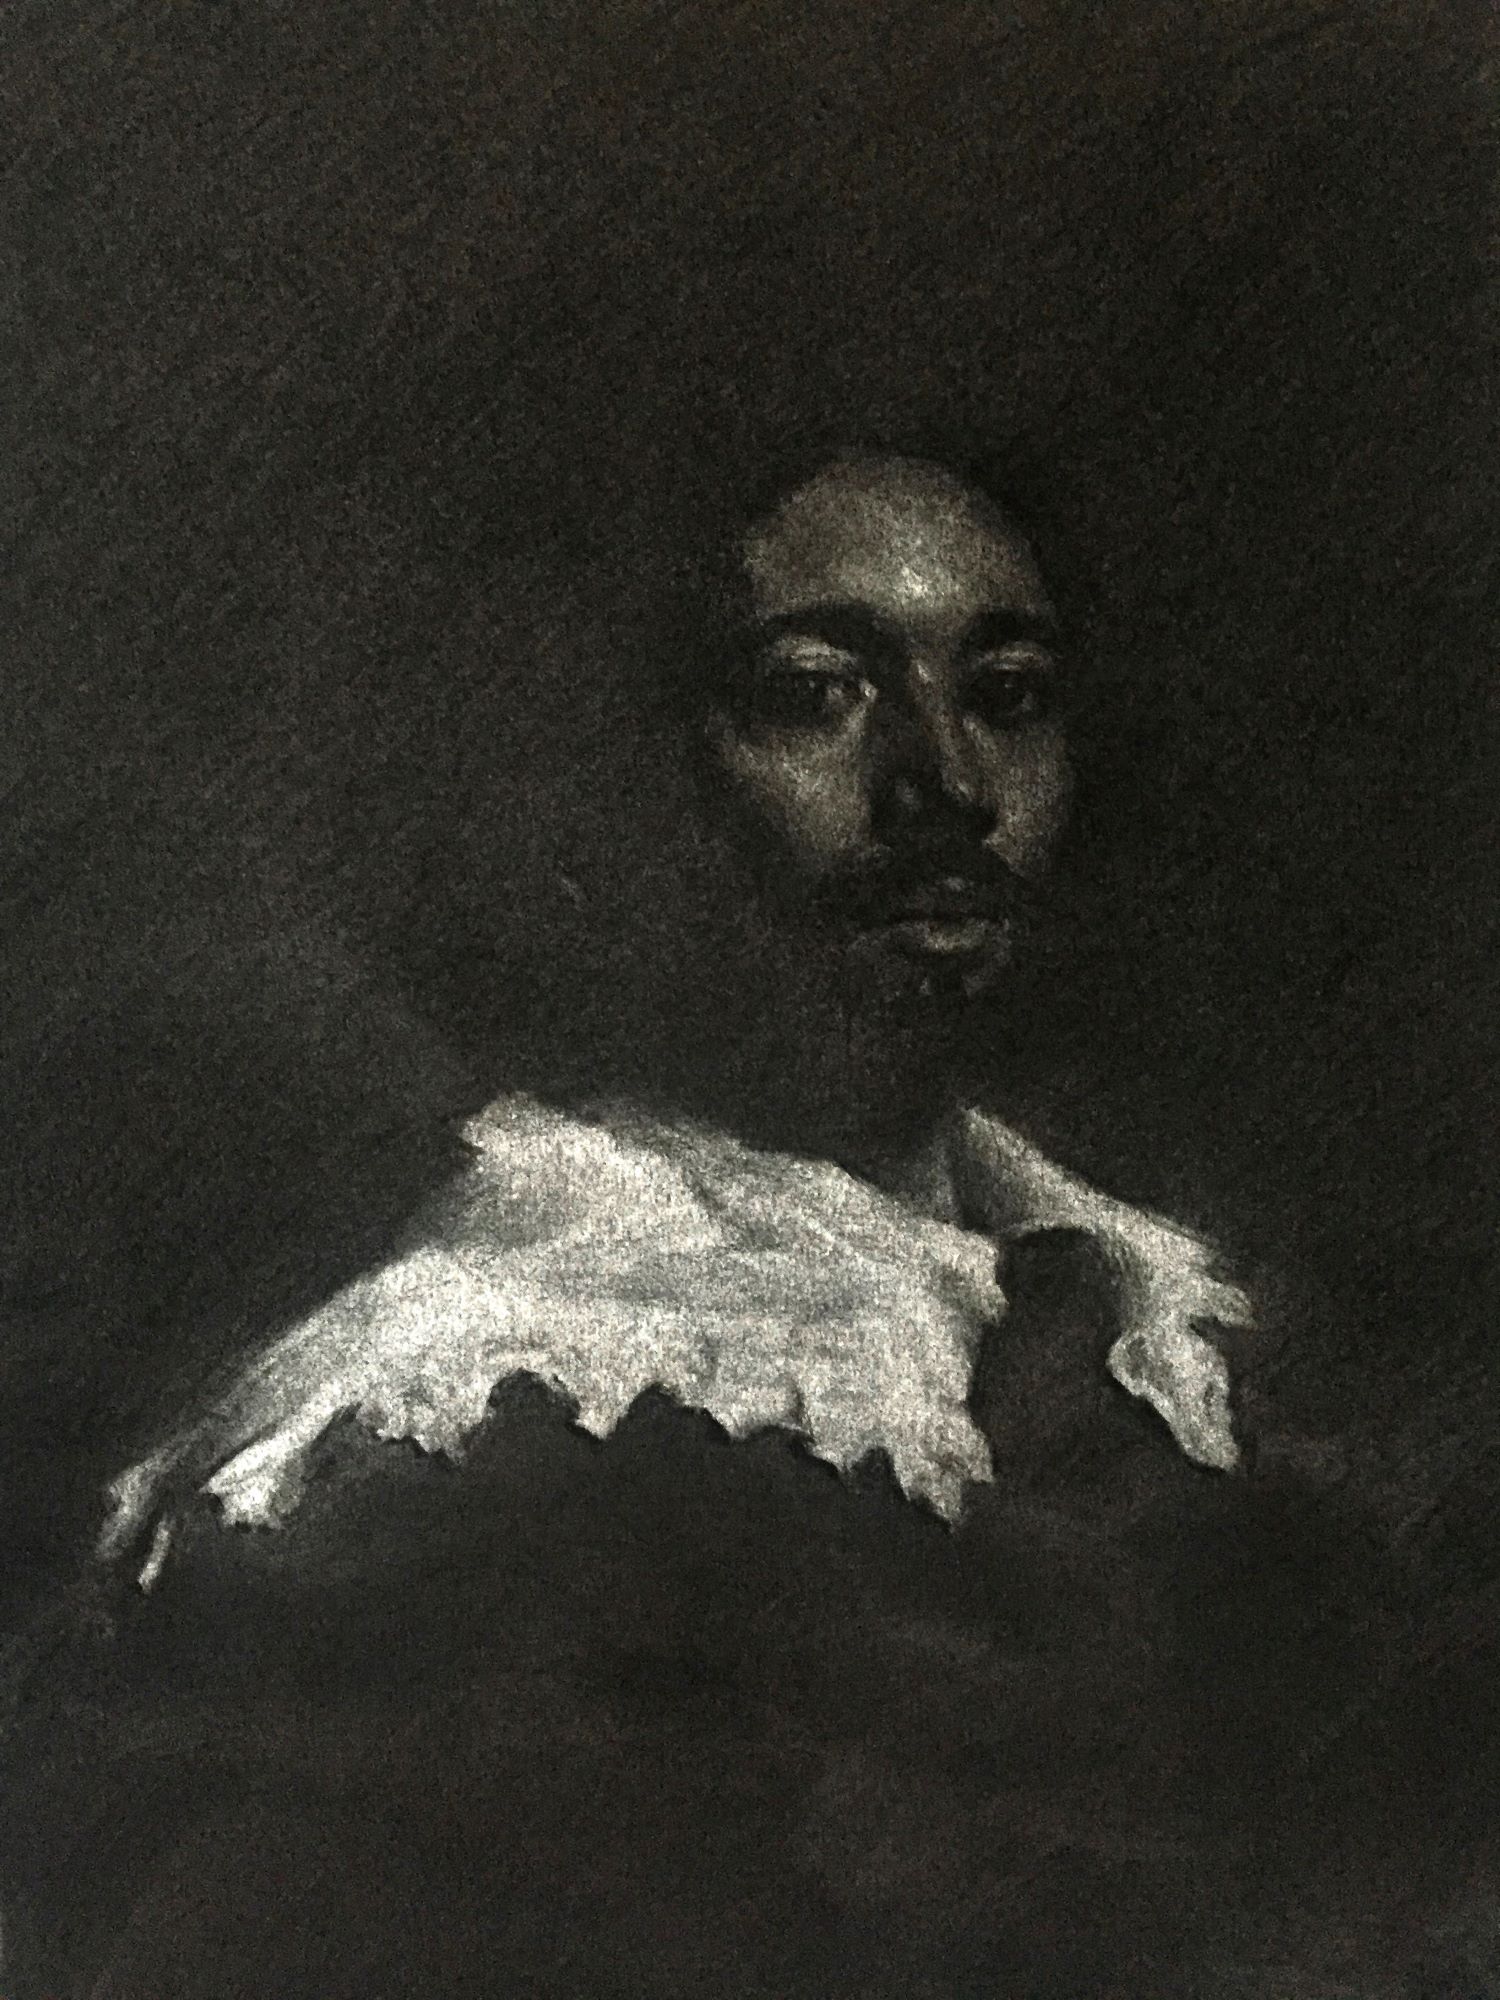 'Master Copy of Juan de Pareja by Velázquez' by artist Emmanuelle Capatos